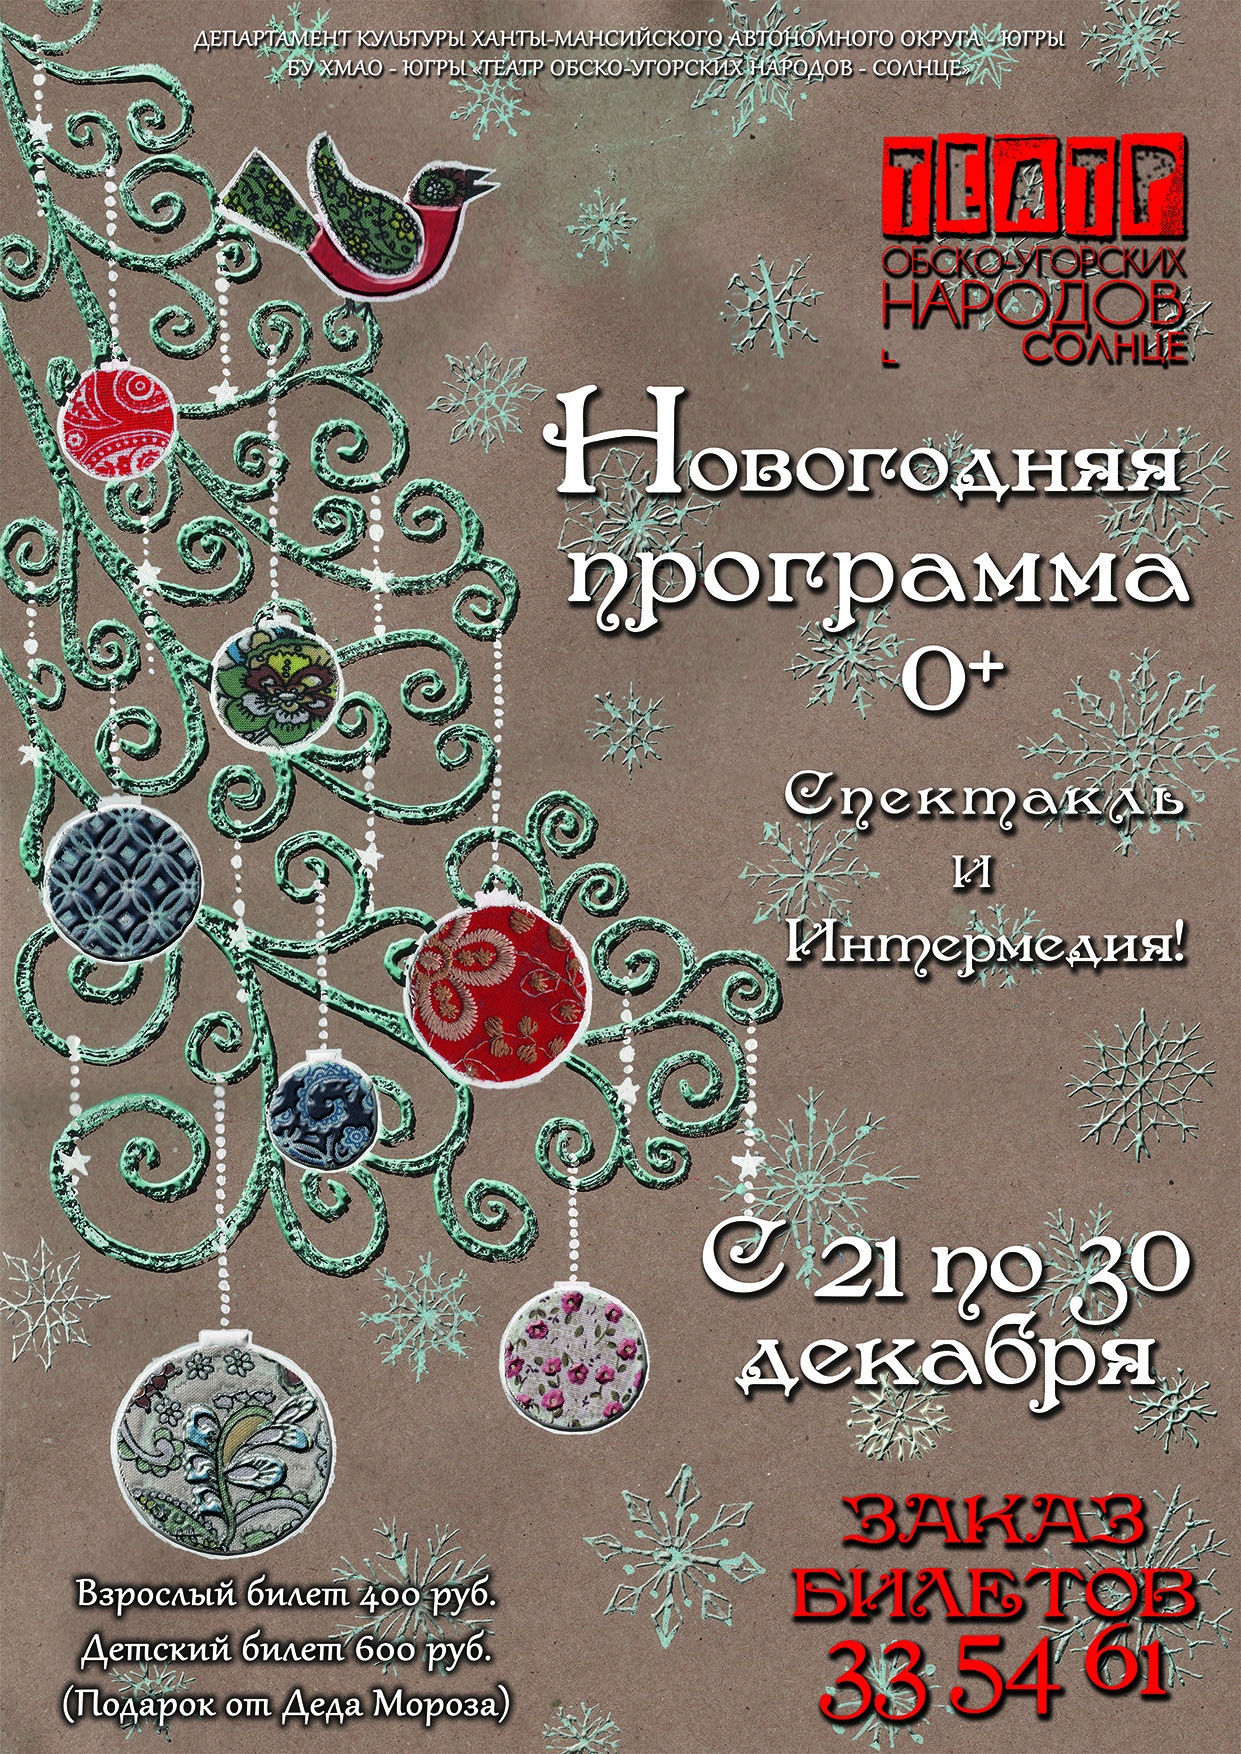 Новогоднюю программу готовит «Театр обско-угорских народов – Солнце»